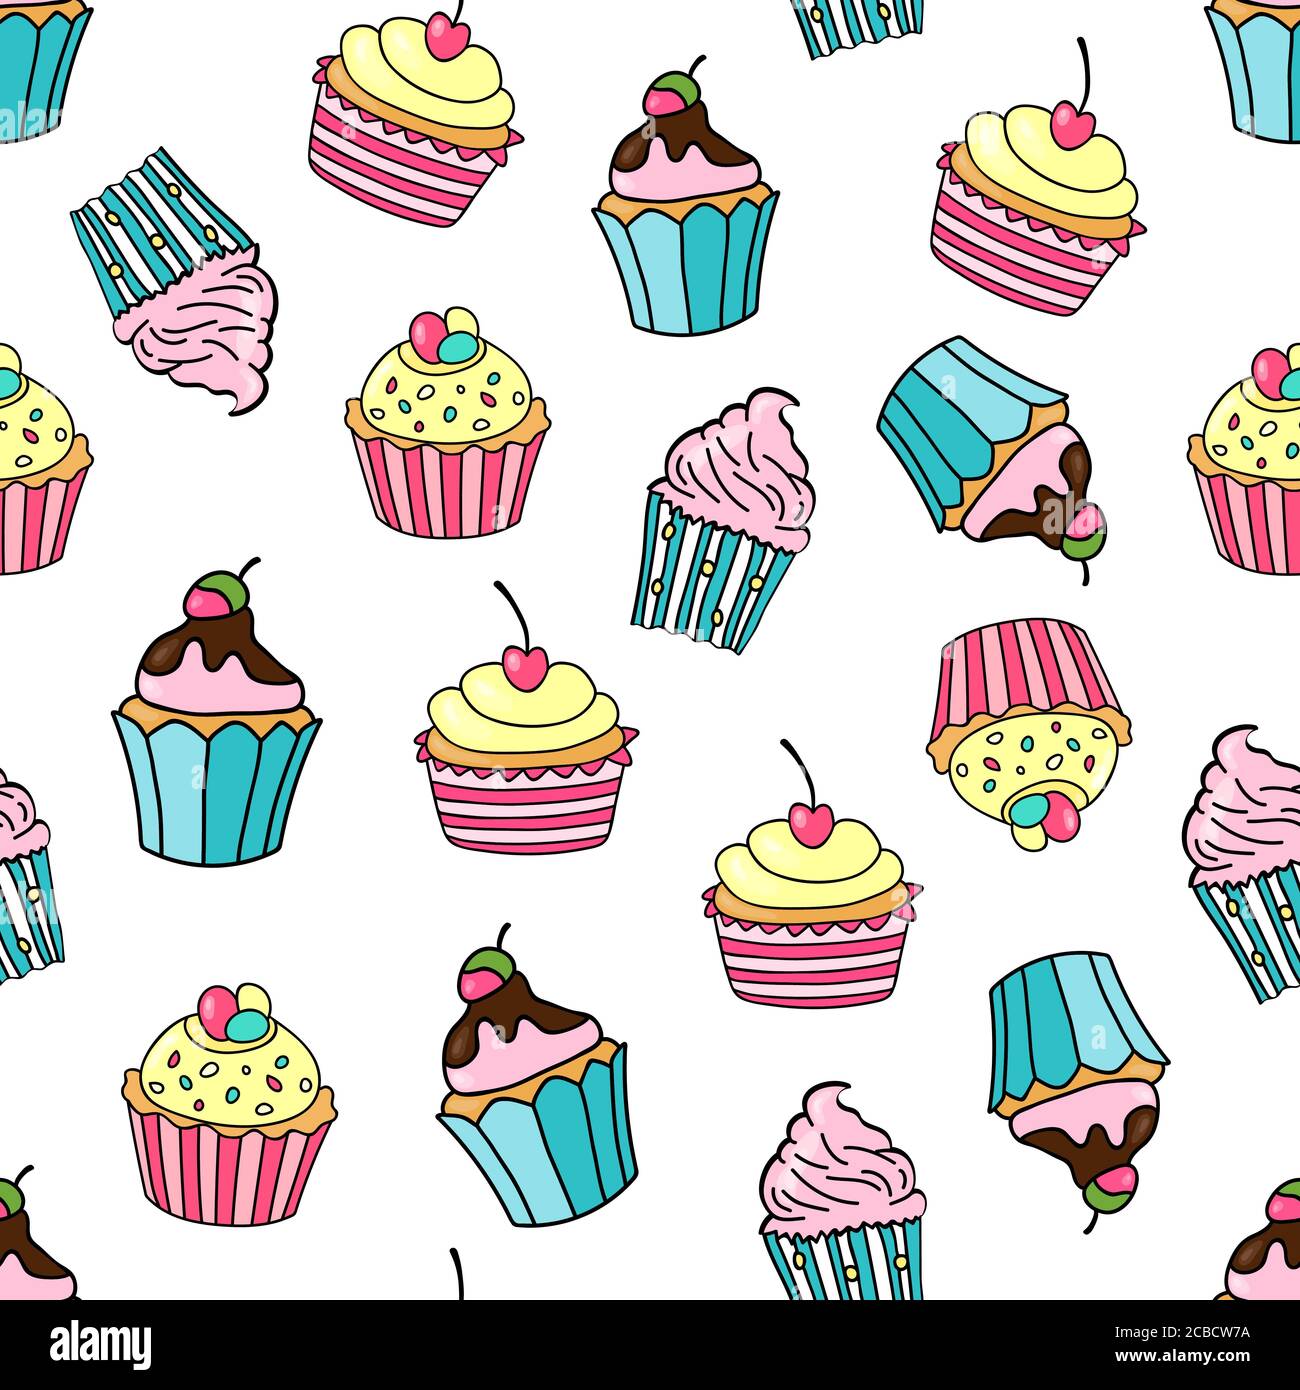 Nahtloses Muster mit Cupcakes auf weißem Hintergrund. Süße Kuchen mit Kirsche, Erdbeere, Glasur und Sahne verziert. Vektorgrafik. Stock Vektor